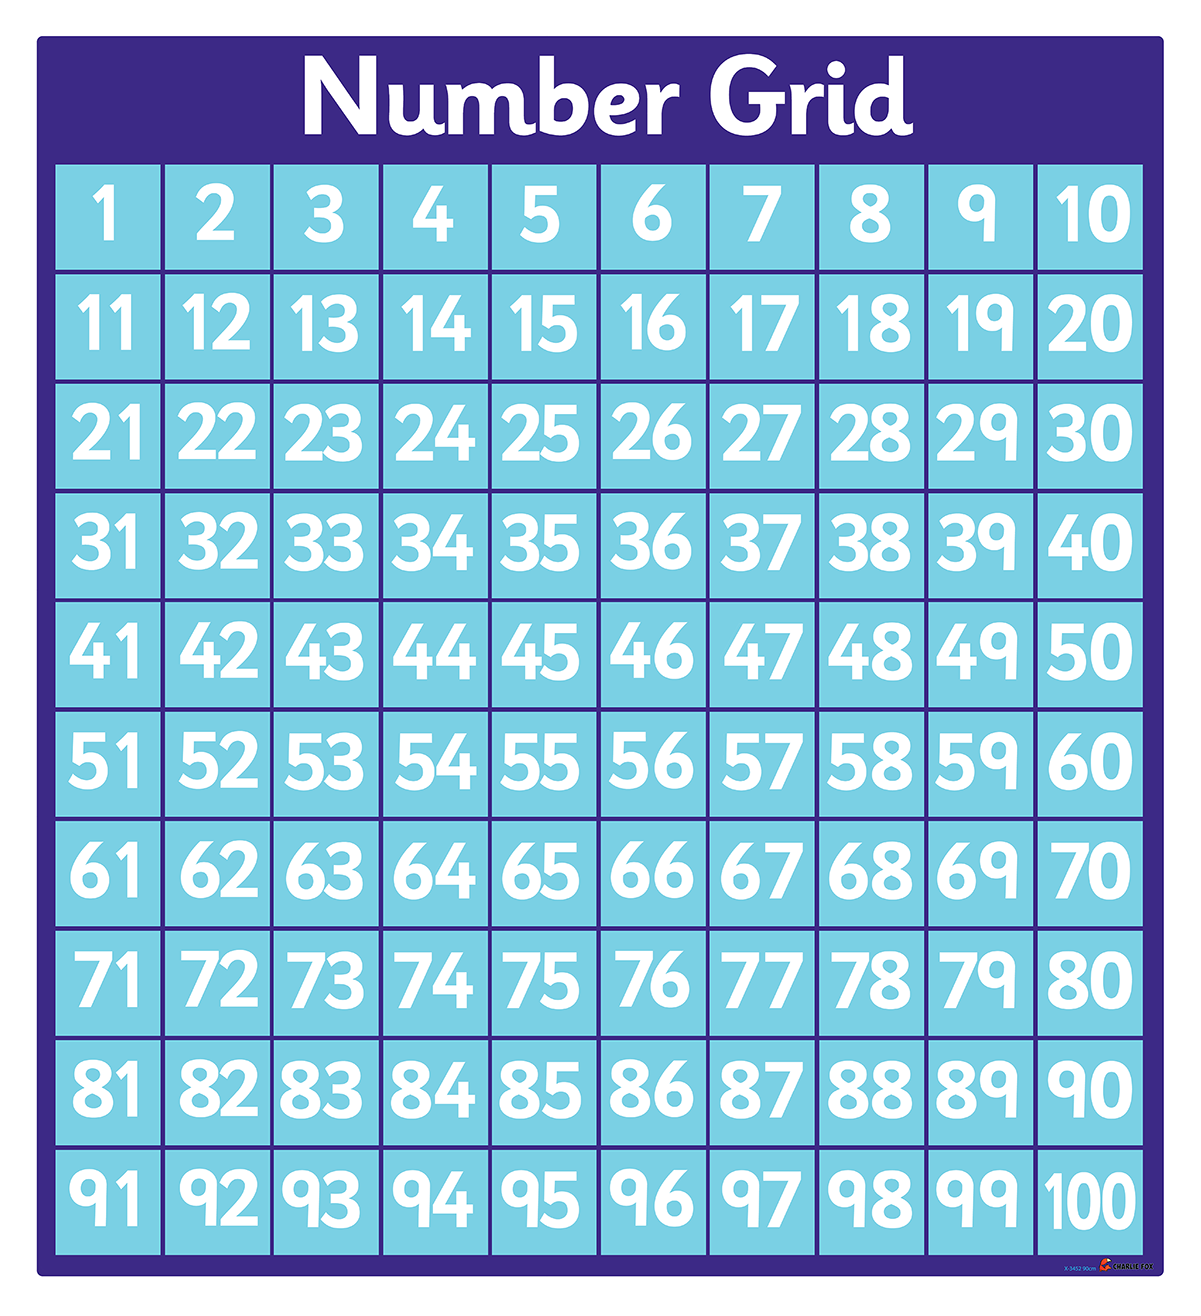 Number Grid Number Chart Number Line Number Words Wor - vrogue.co